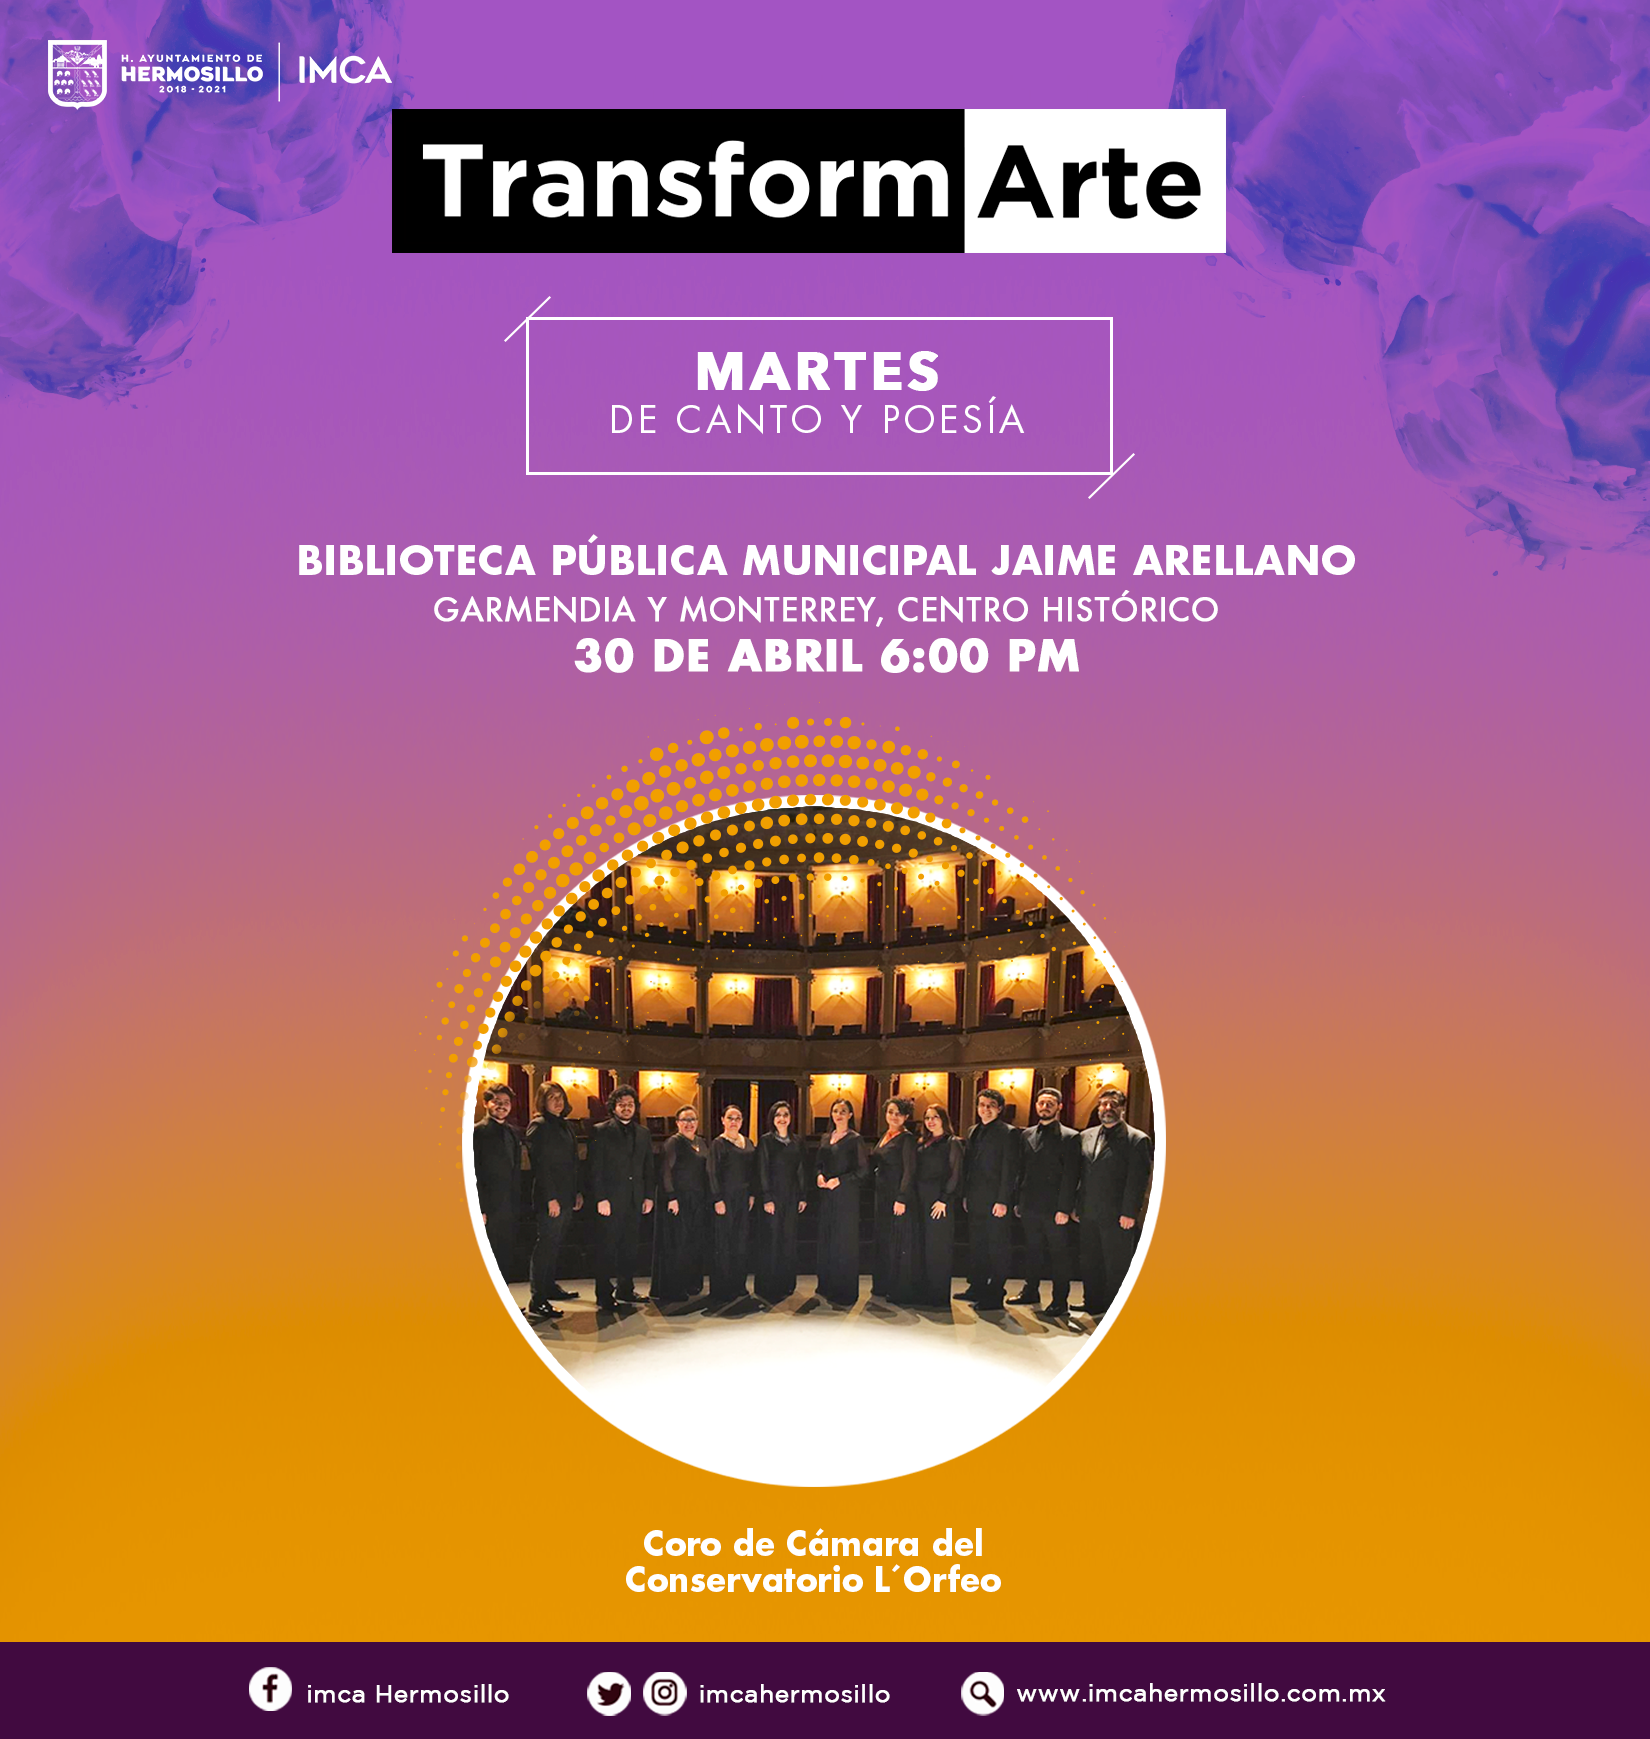 TransformArte, Coro de la Cámara del Conservatorio L’Orfeo.